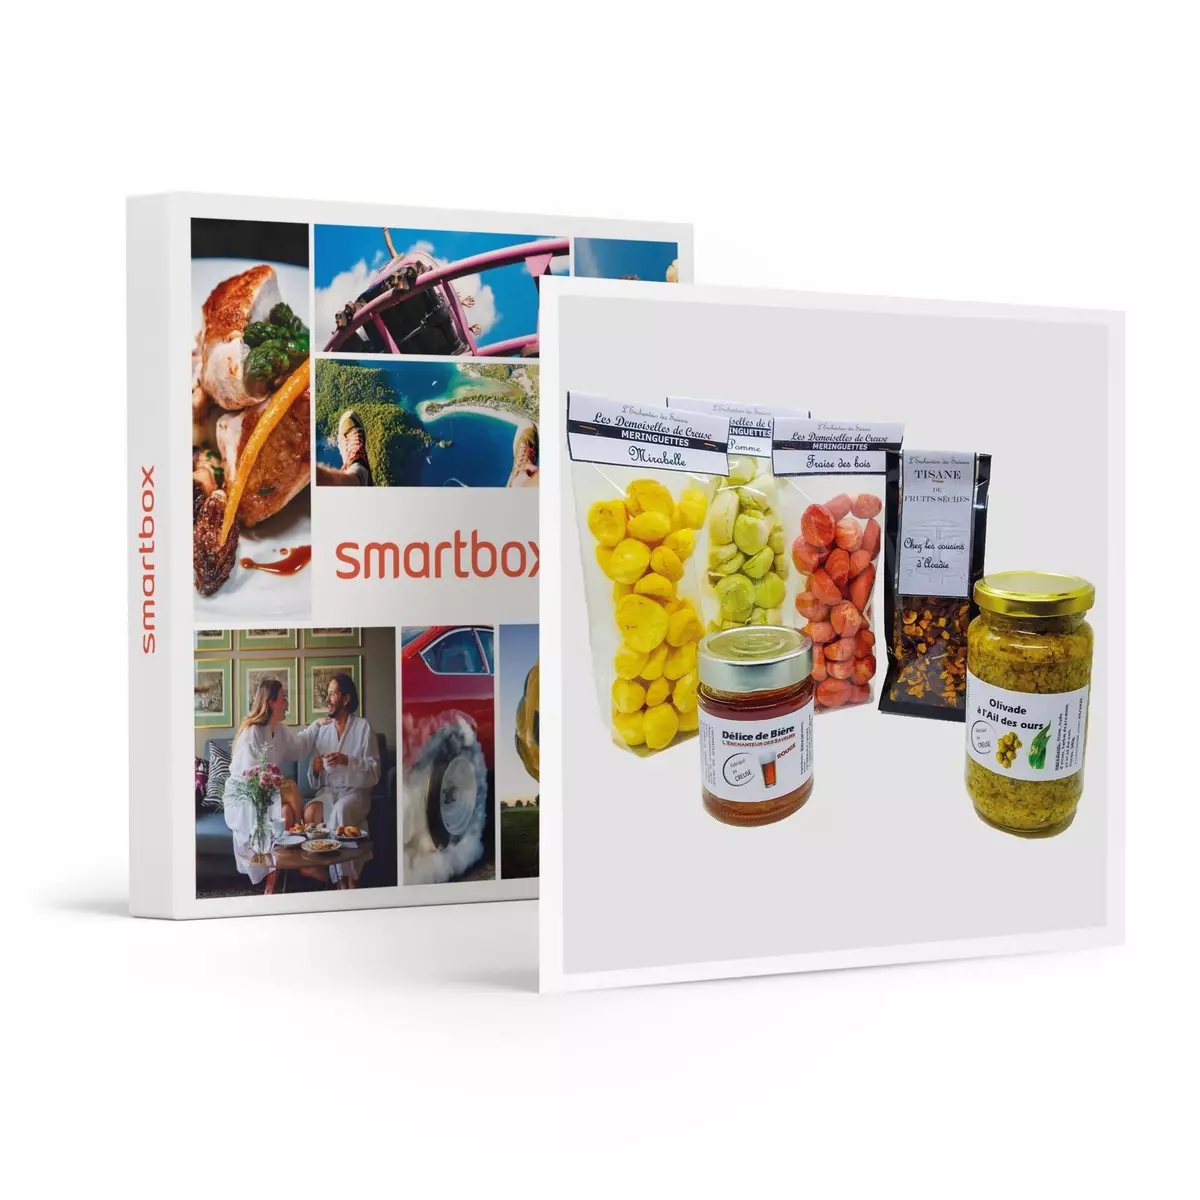 Smartbox Assortiment de spécialités artisanales sucrées et salées de la Creuse - Coffret Cadeau Gastronomie